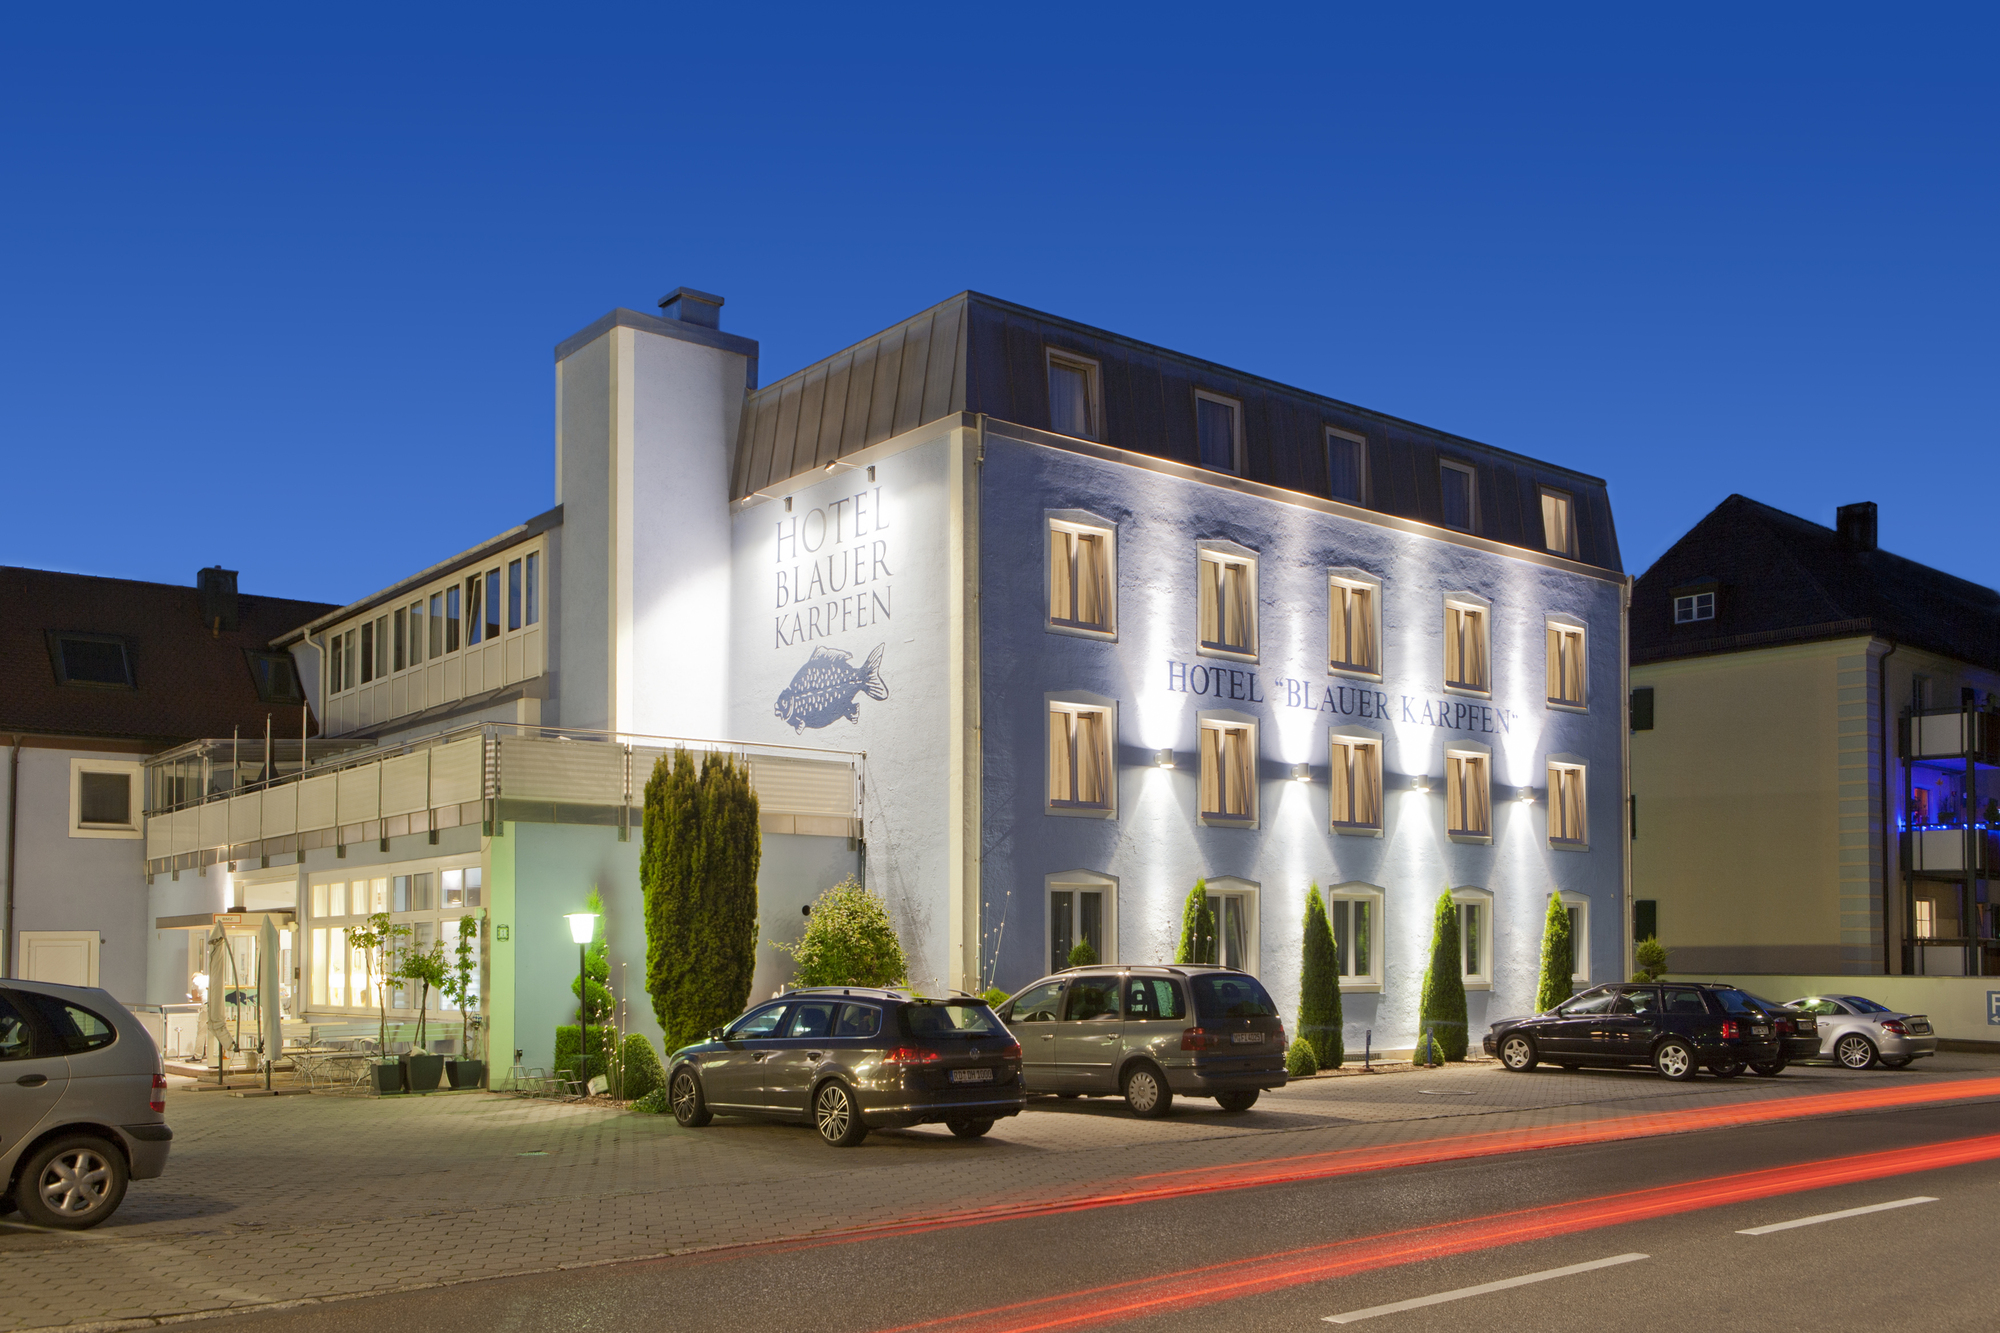 Das Niall Horan Konzert Hotel blauer Karpfen, Oberschleißheim bei München